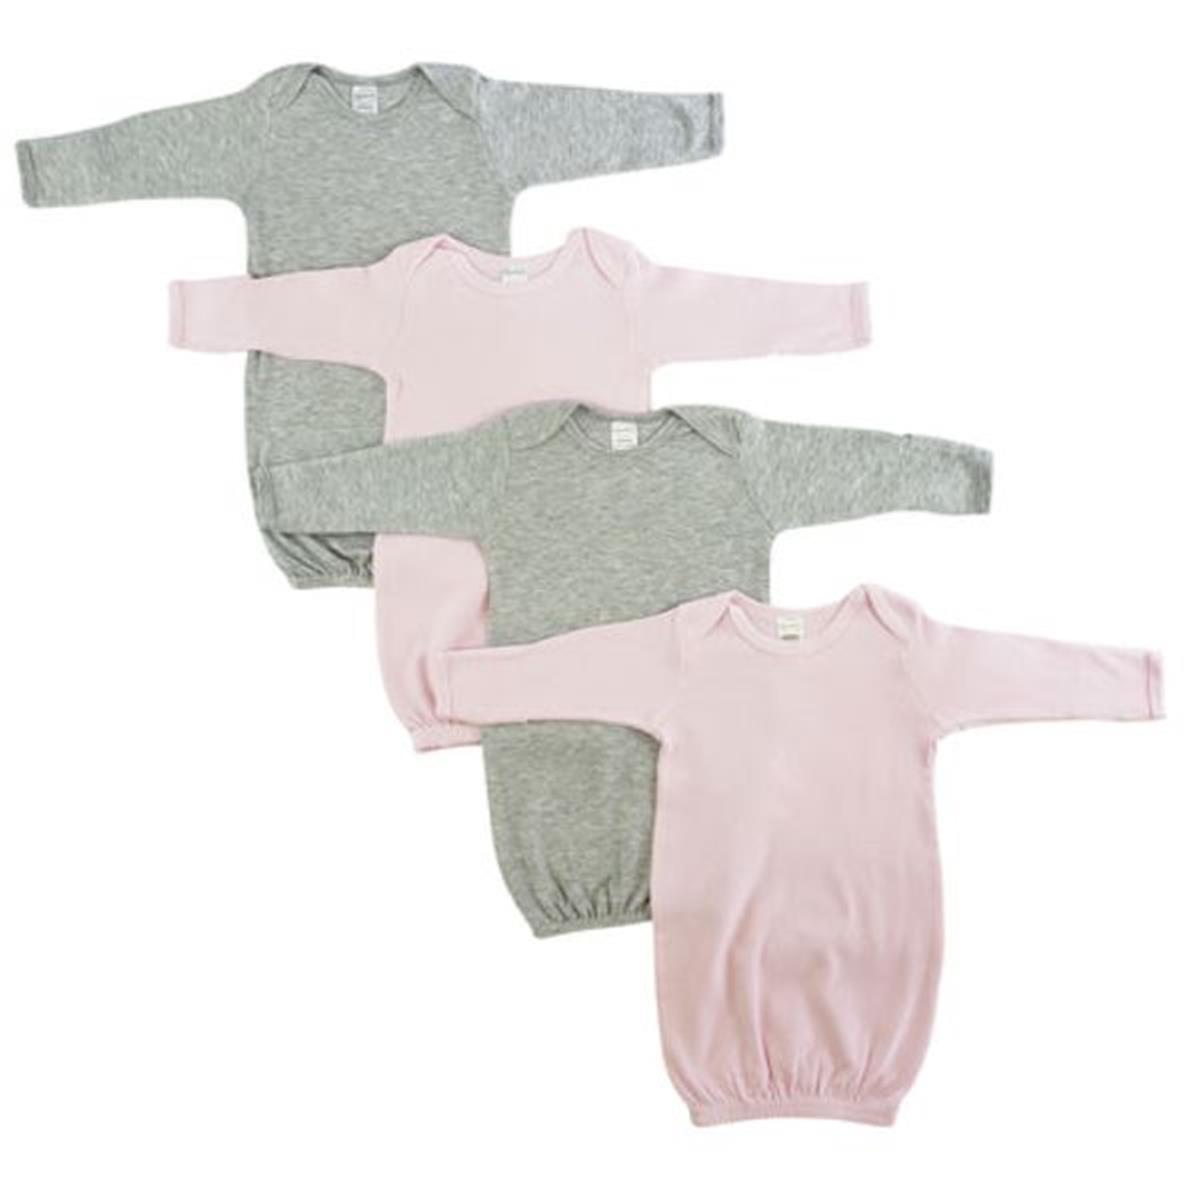 Bambini LS-0681 Baby Girl Shower Gift Set&#44; White & Pink - Newborn